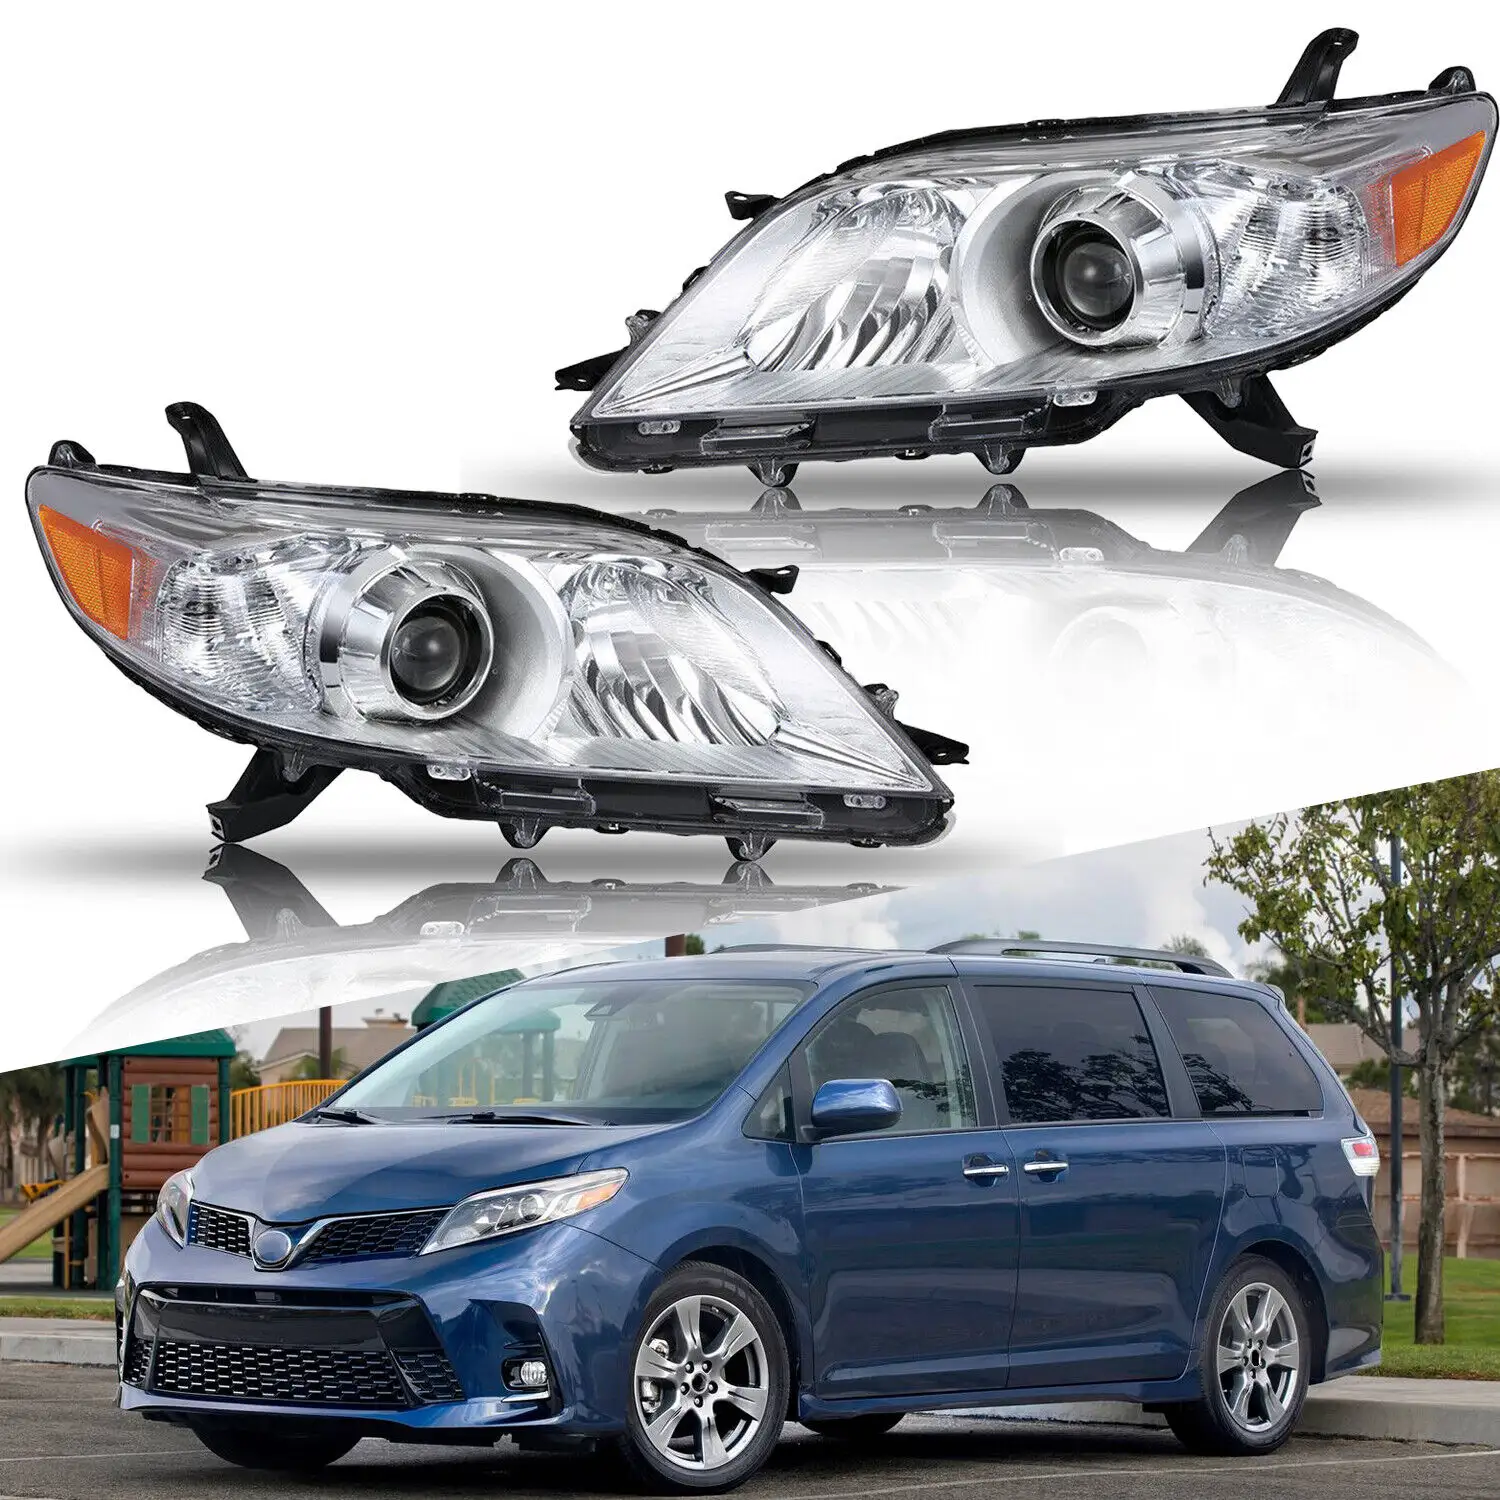 Fabricante OEM auto lâmpada de cabeça para 2011-2020 Toyota Sienna halogênio âmbar faróis projetores de carro esquerdo + direito farol do carro